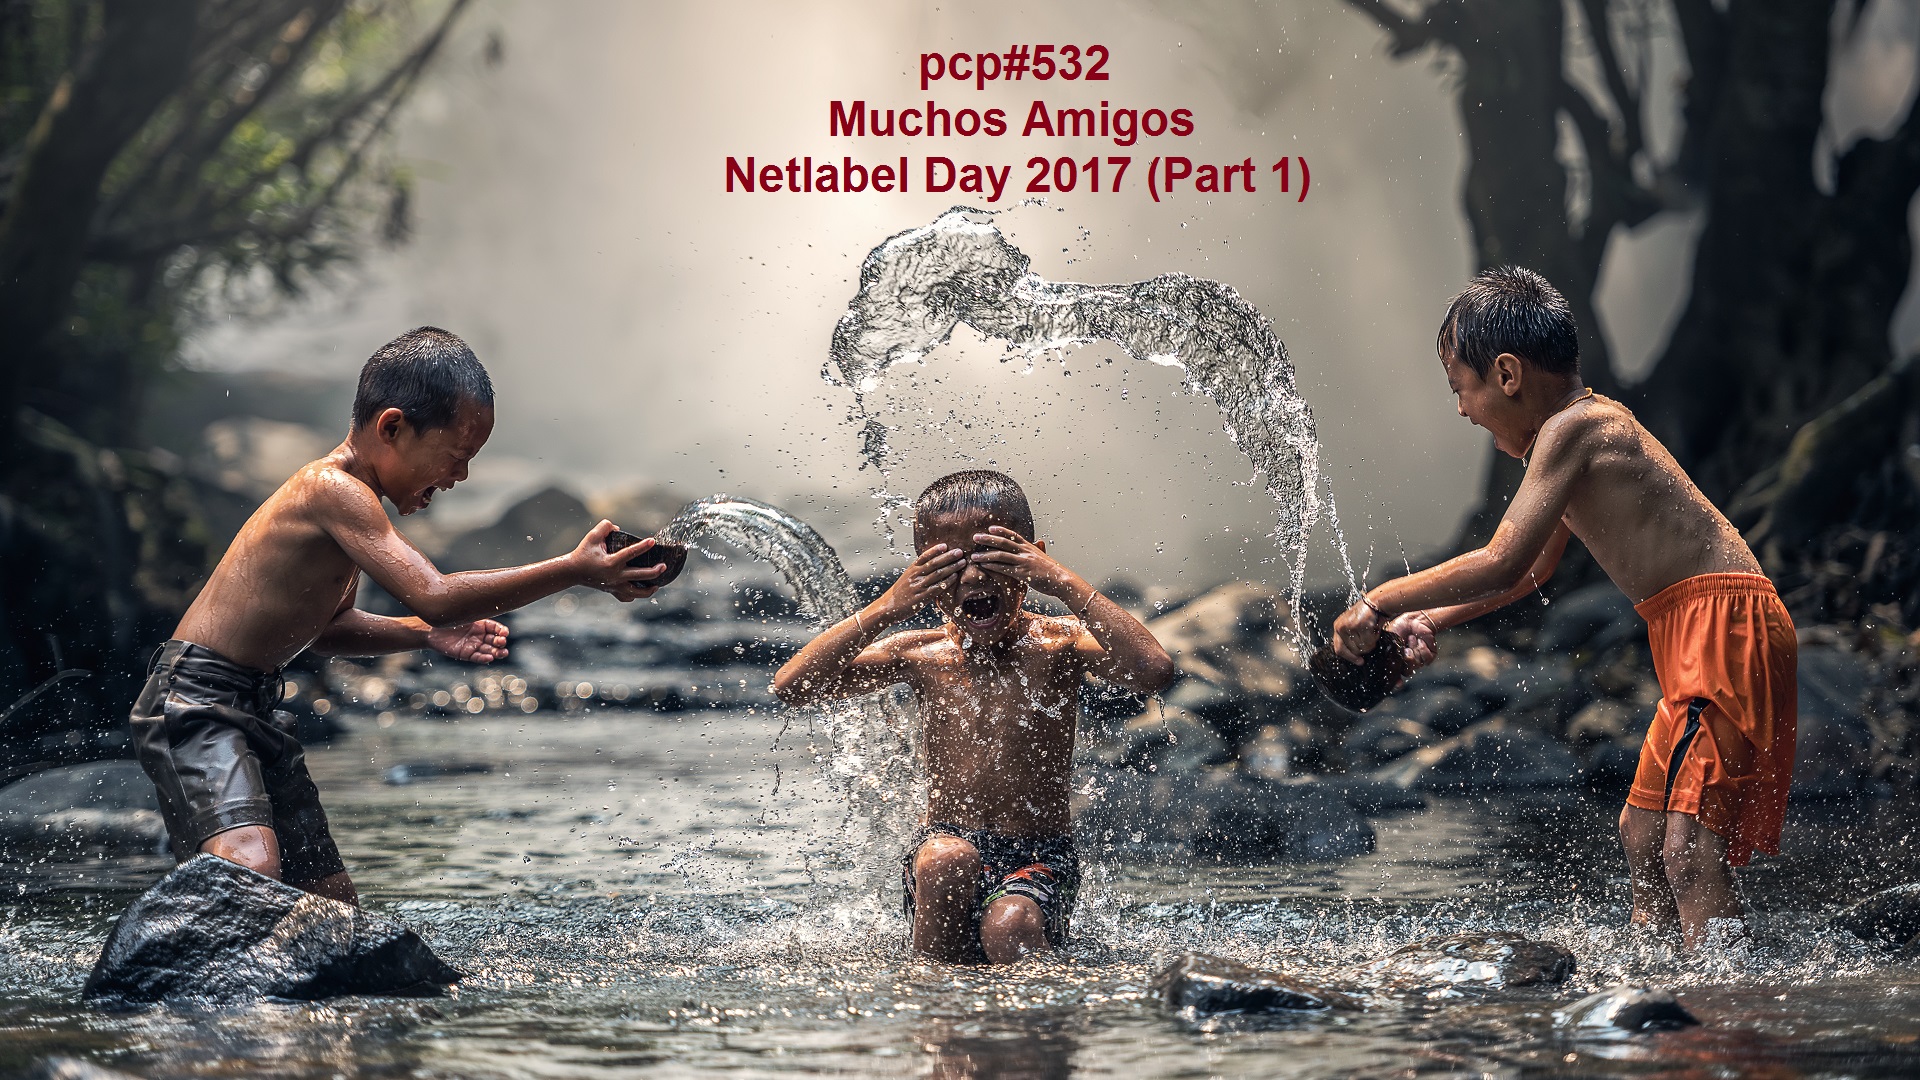 PCP#532... Muchos Amigos... (Netlabel Day 2017, Part 1)